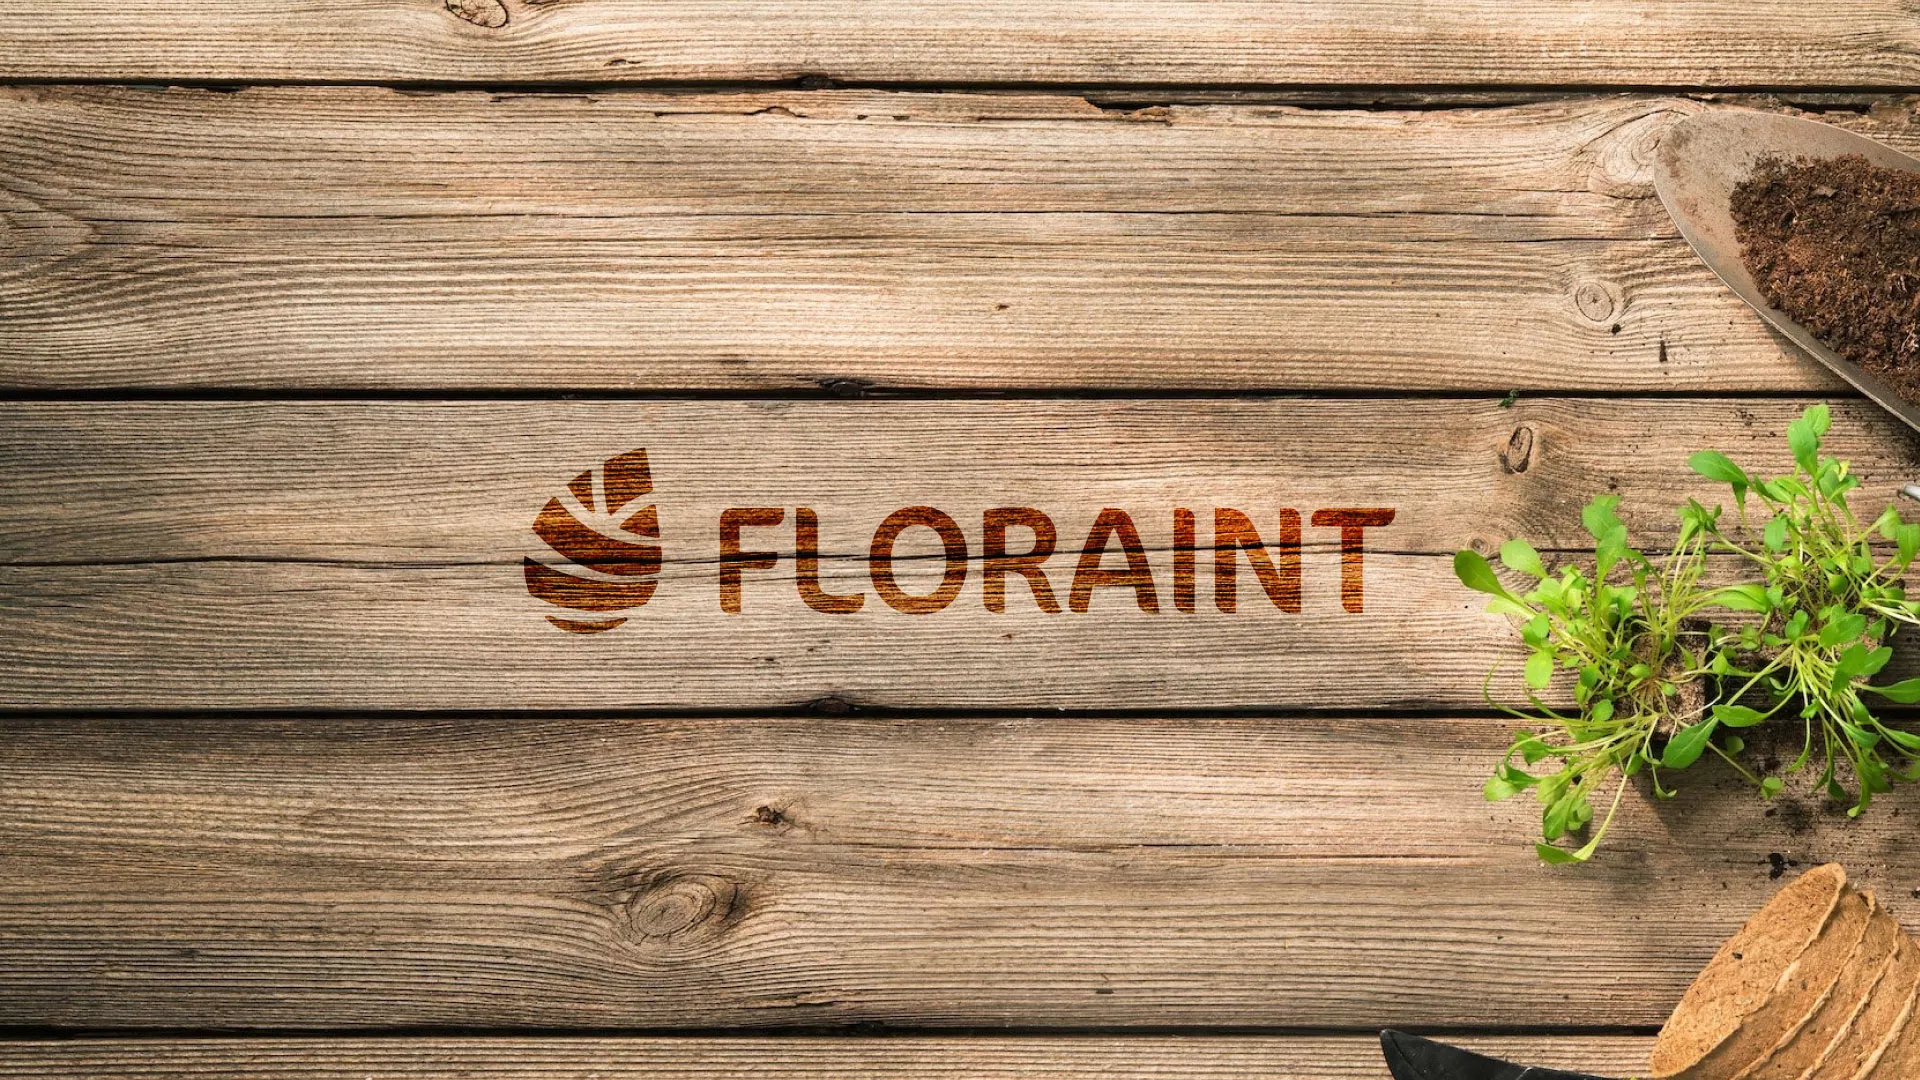 Создание логотипа и интернет-магазина «FLORAINT» в Харабалях